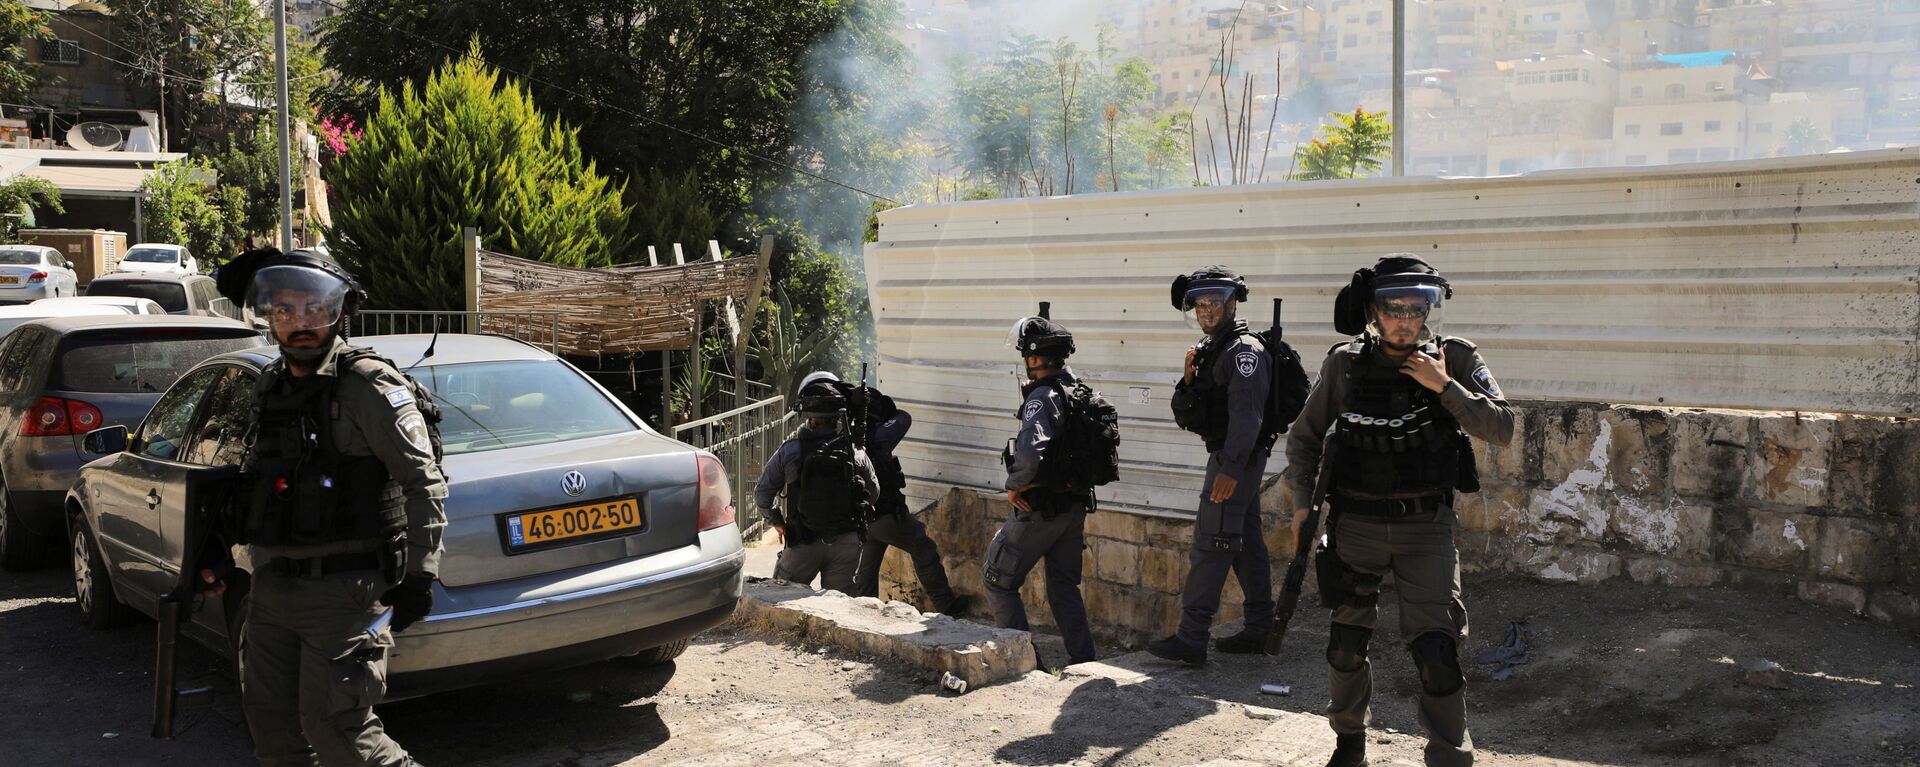 اشتباكات بين قوات الشرطة الإسرائيلية والفلسطينيين في حي سلوان، الضفة الغربية المحتلة، فلسطين، 29 يونيو 2021 - سبوتنيك عربي, 1920, 28.07.2021